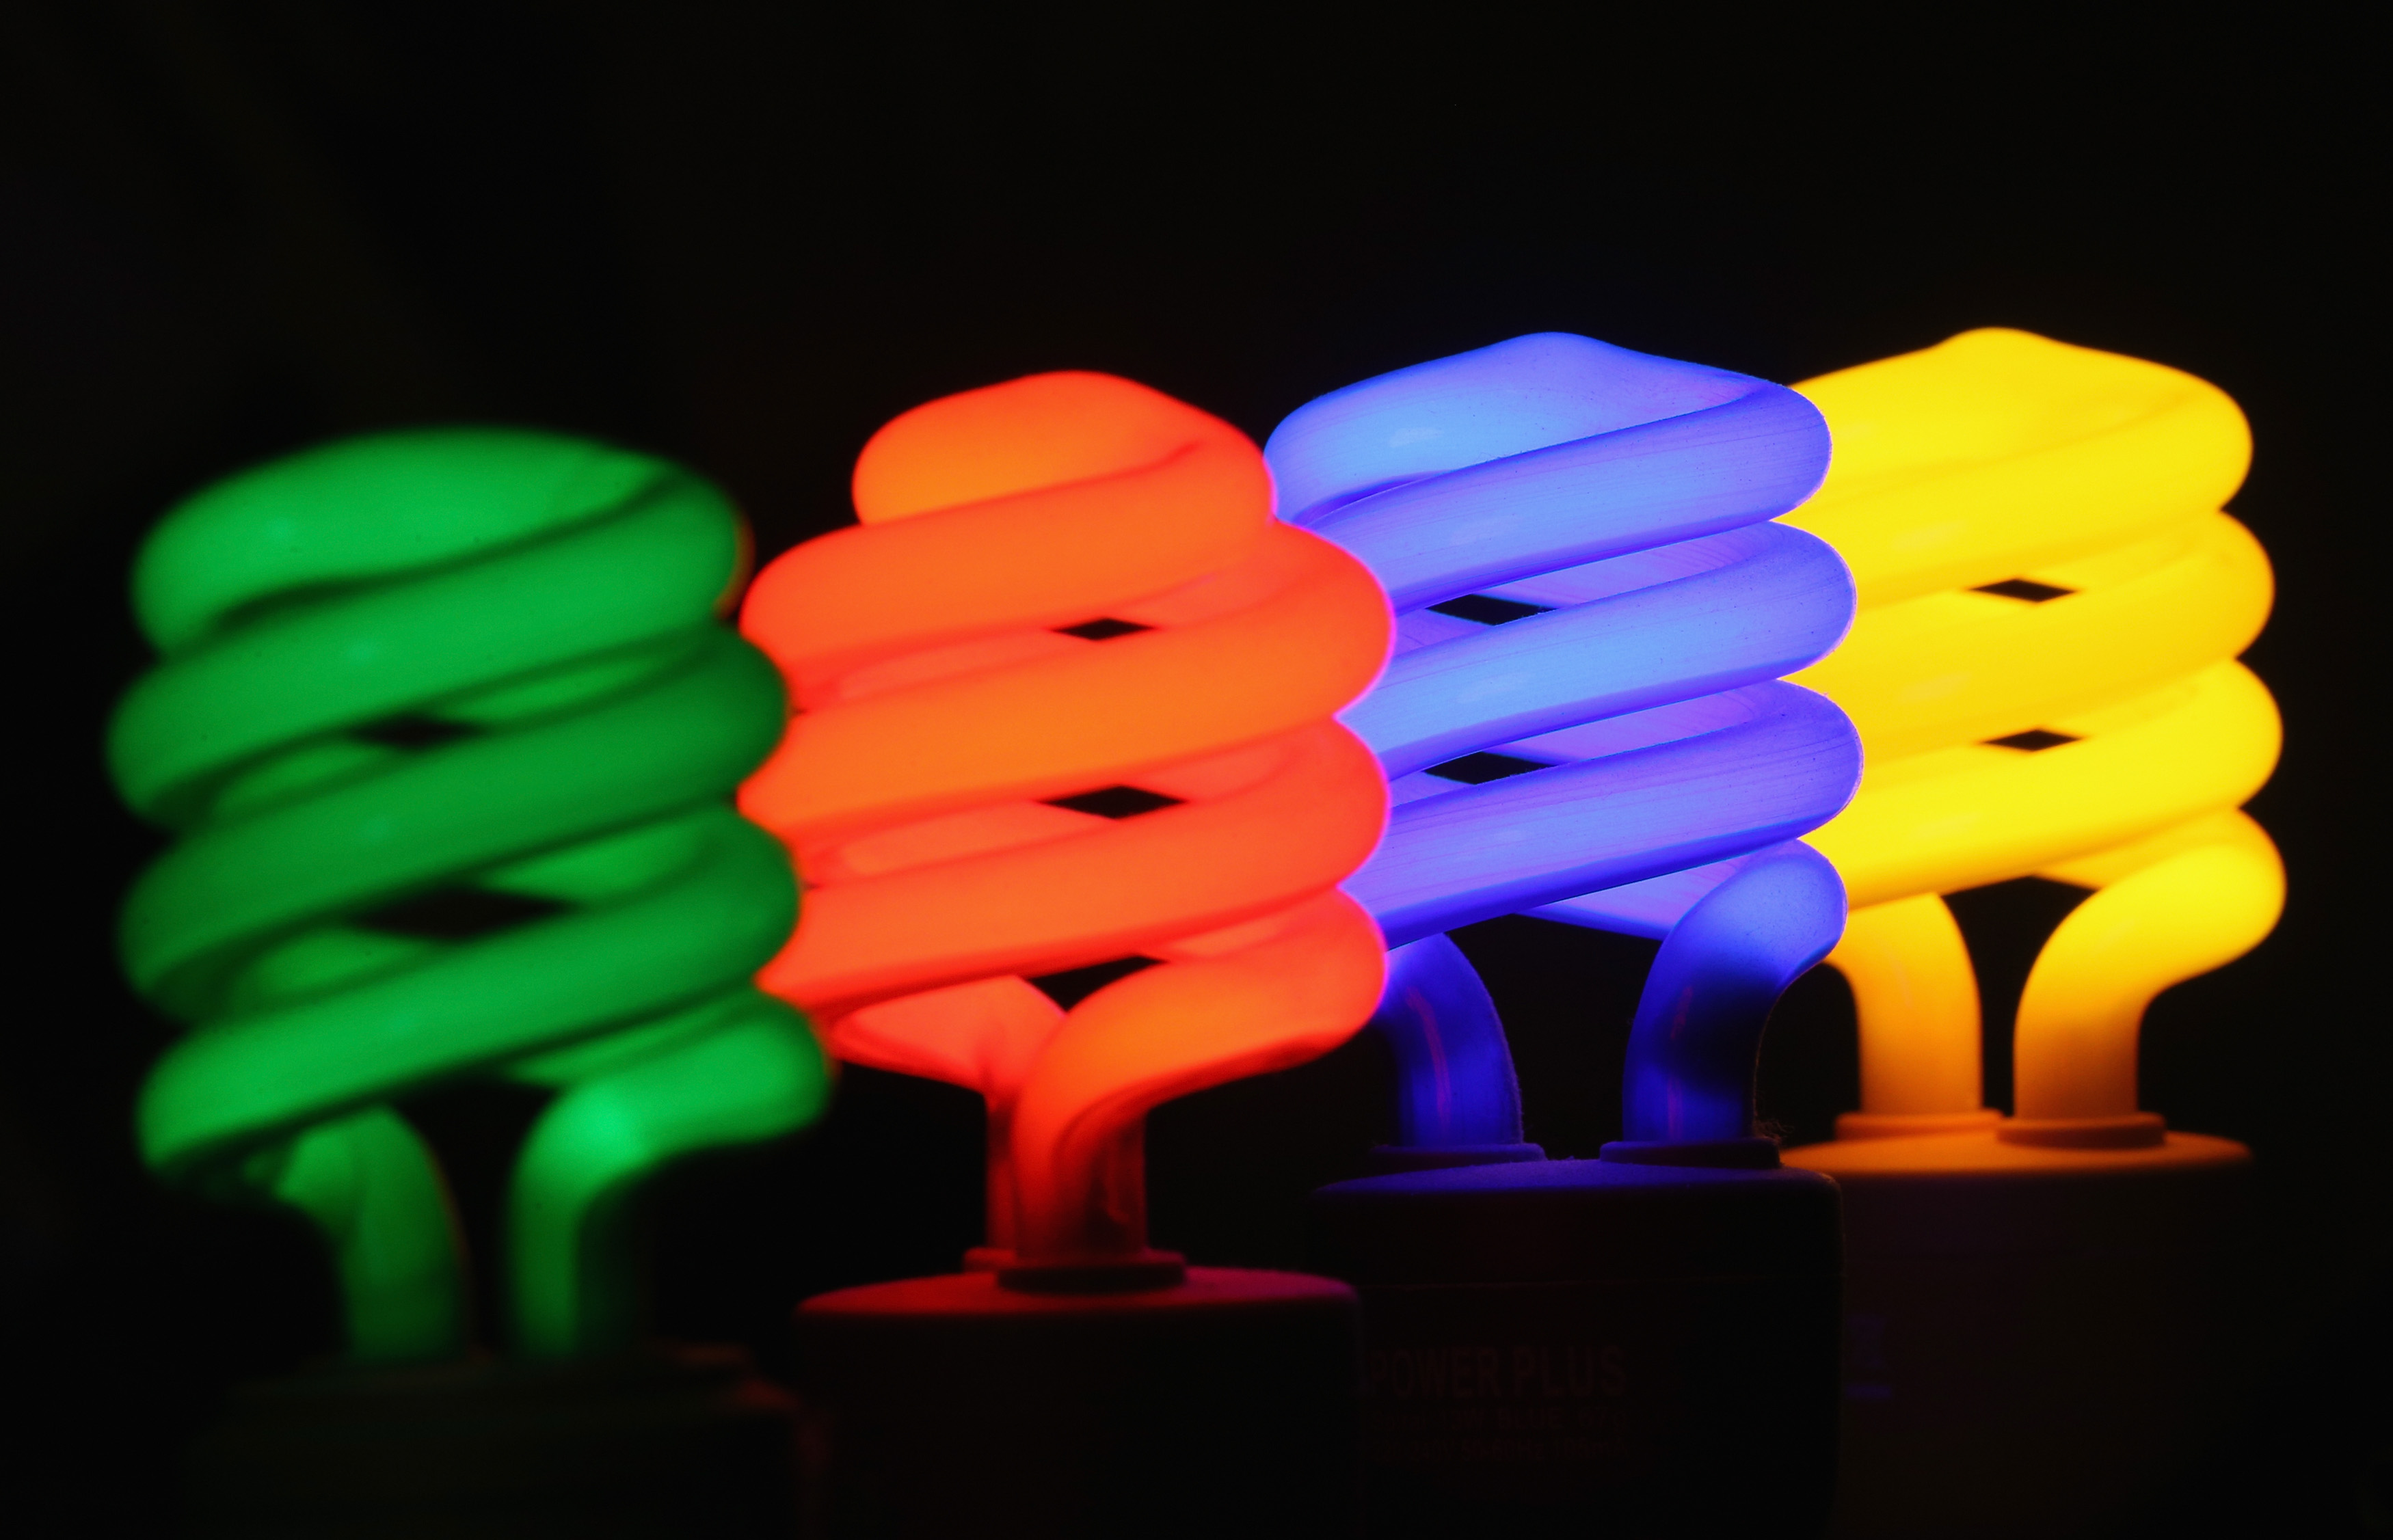 Main Benefits of Using Fluorescent Light Bulbs